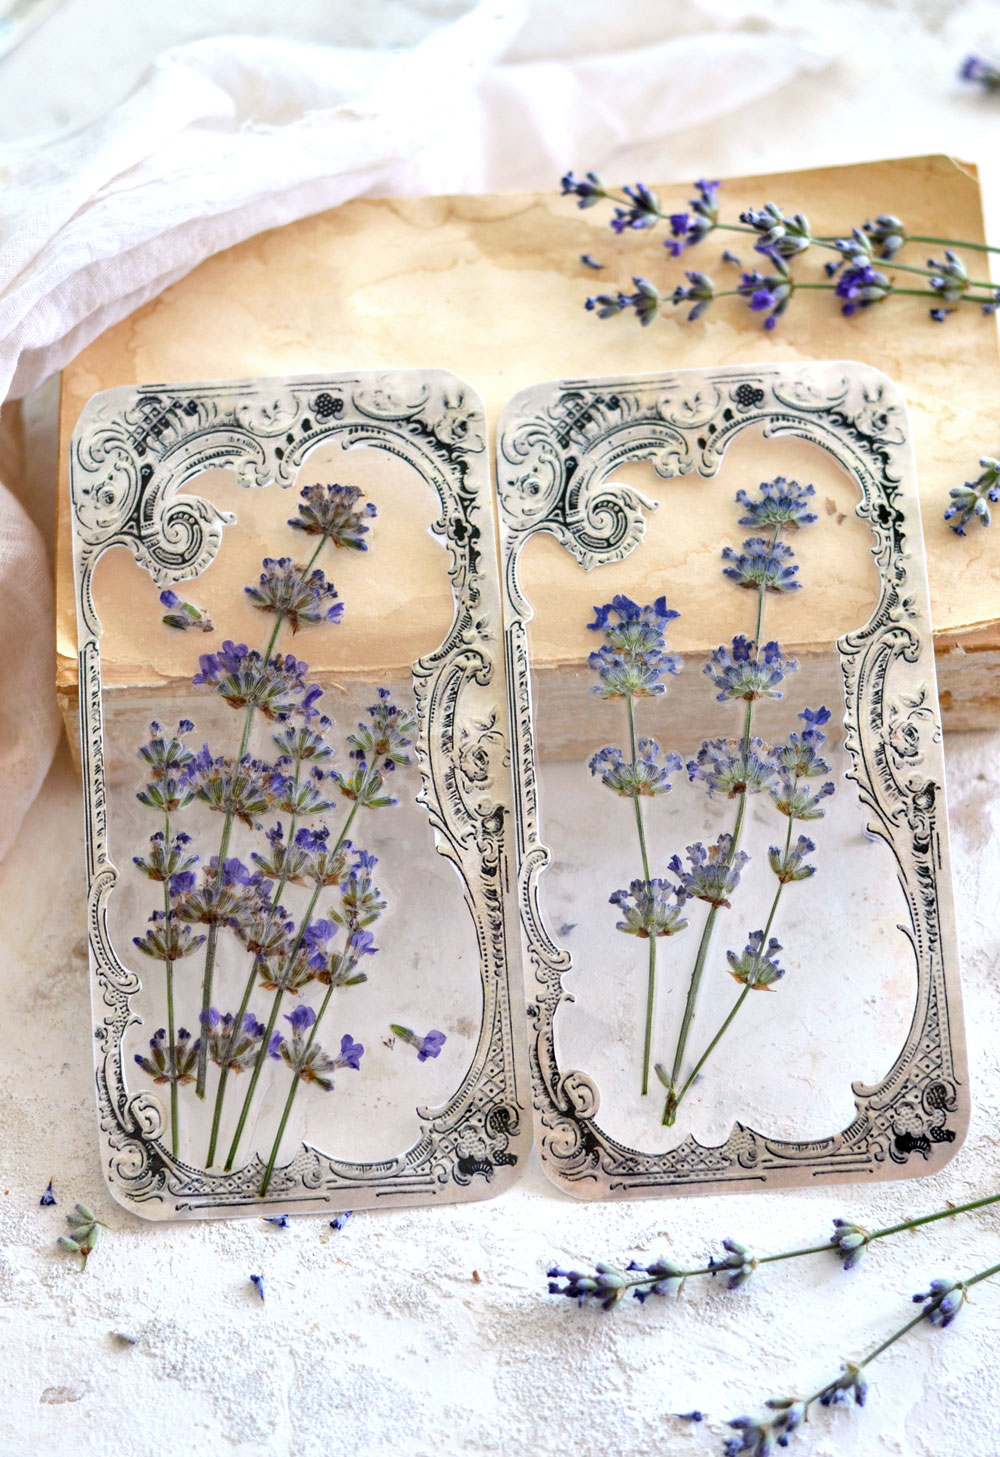 DIY Pressed Flowers Crafts